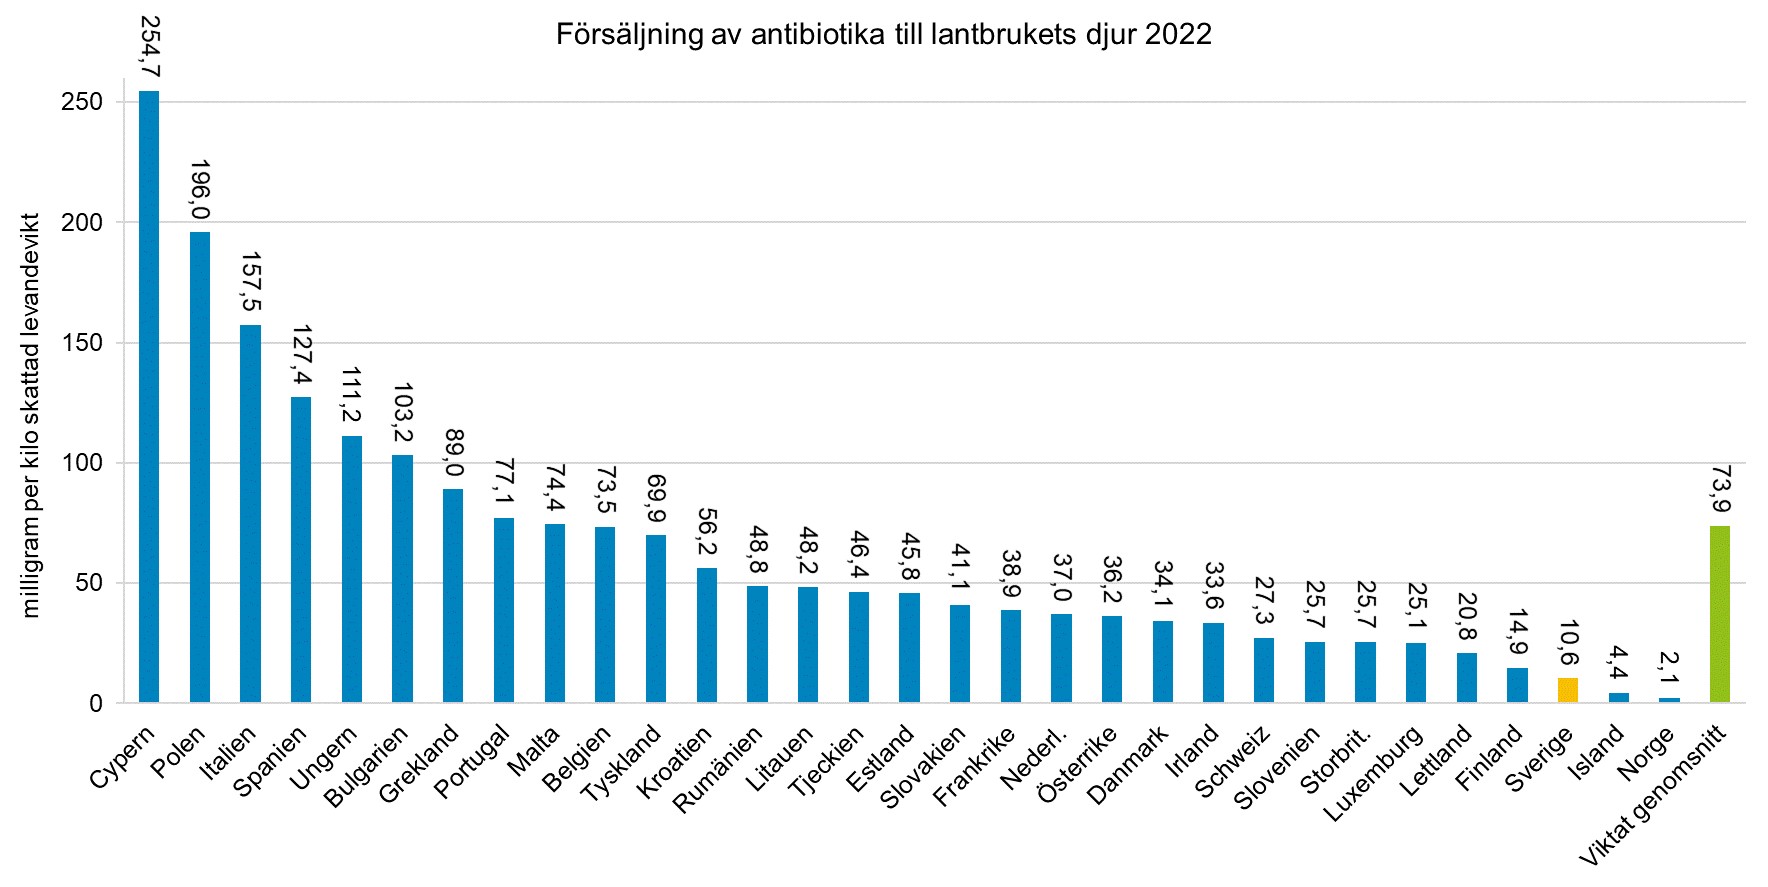 Diagram över försäljningen av antibiotika till lantbrukets djur i olika länder i Europa under 2022